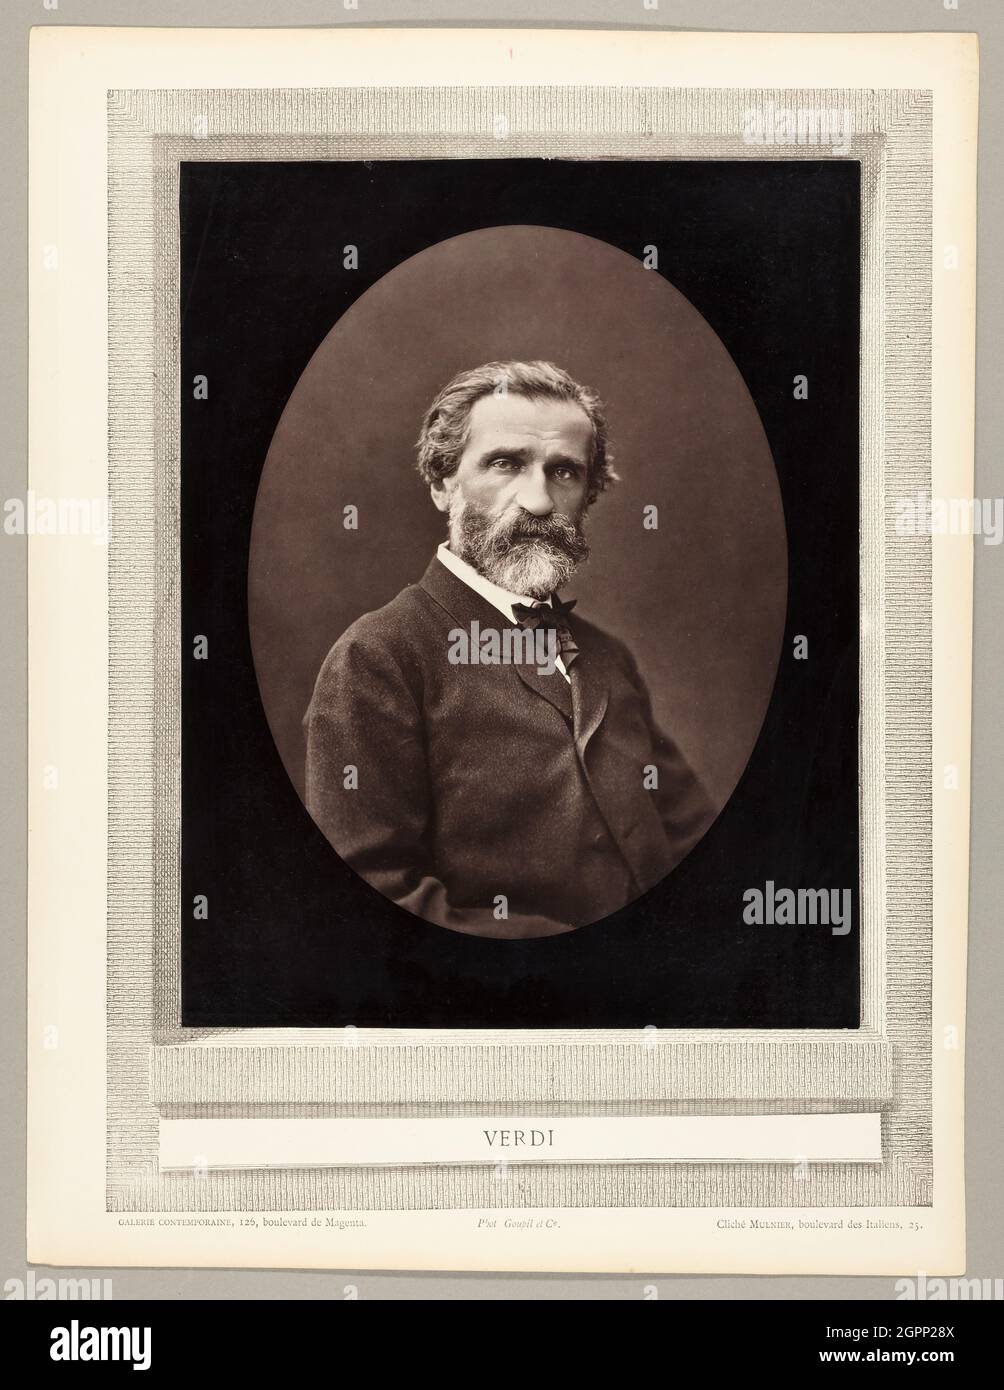 Giuseppe Verdi (Italian composer, 1813-1901), c. 1872. Woodburytype, from the periodical &quot;Galerie Contemporaine Litt&#xe9;raire, Artistique&quot; (1877), volume 4. Stock Photo